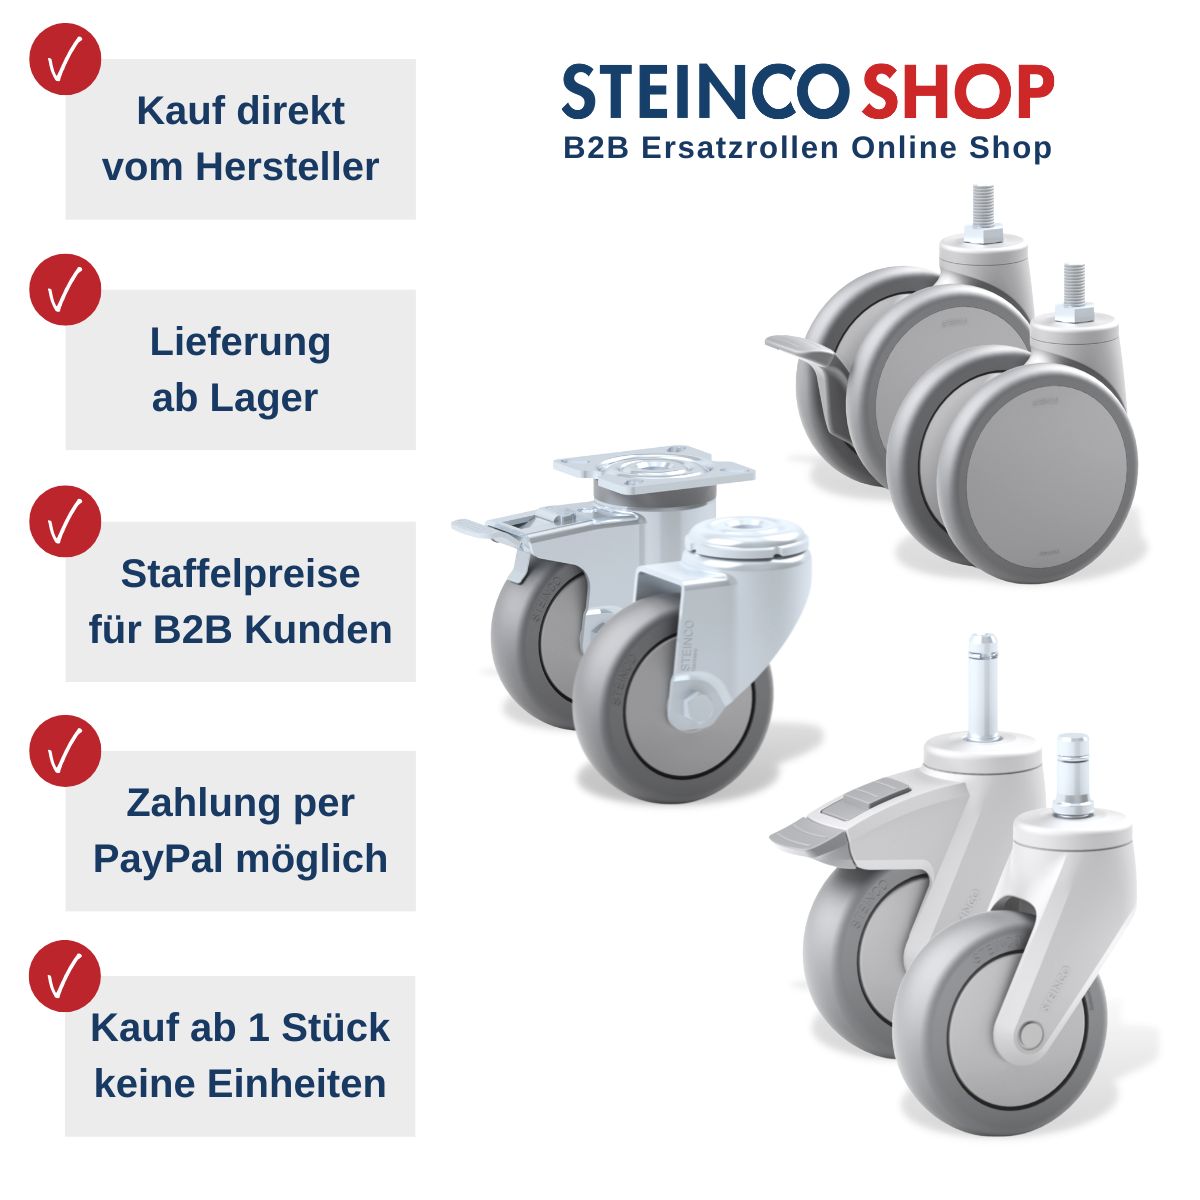 STEINCO Ersatzrollen-Shop Vorteile: kauf direkt beim Hersteller, Staffelpreise, Lieferung ab Lager, Zahlung per PayPal, Kauf ab 1 Stück